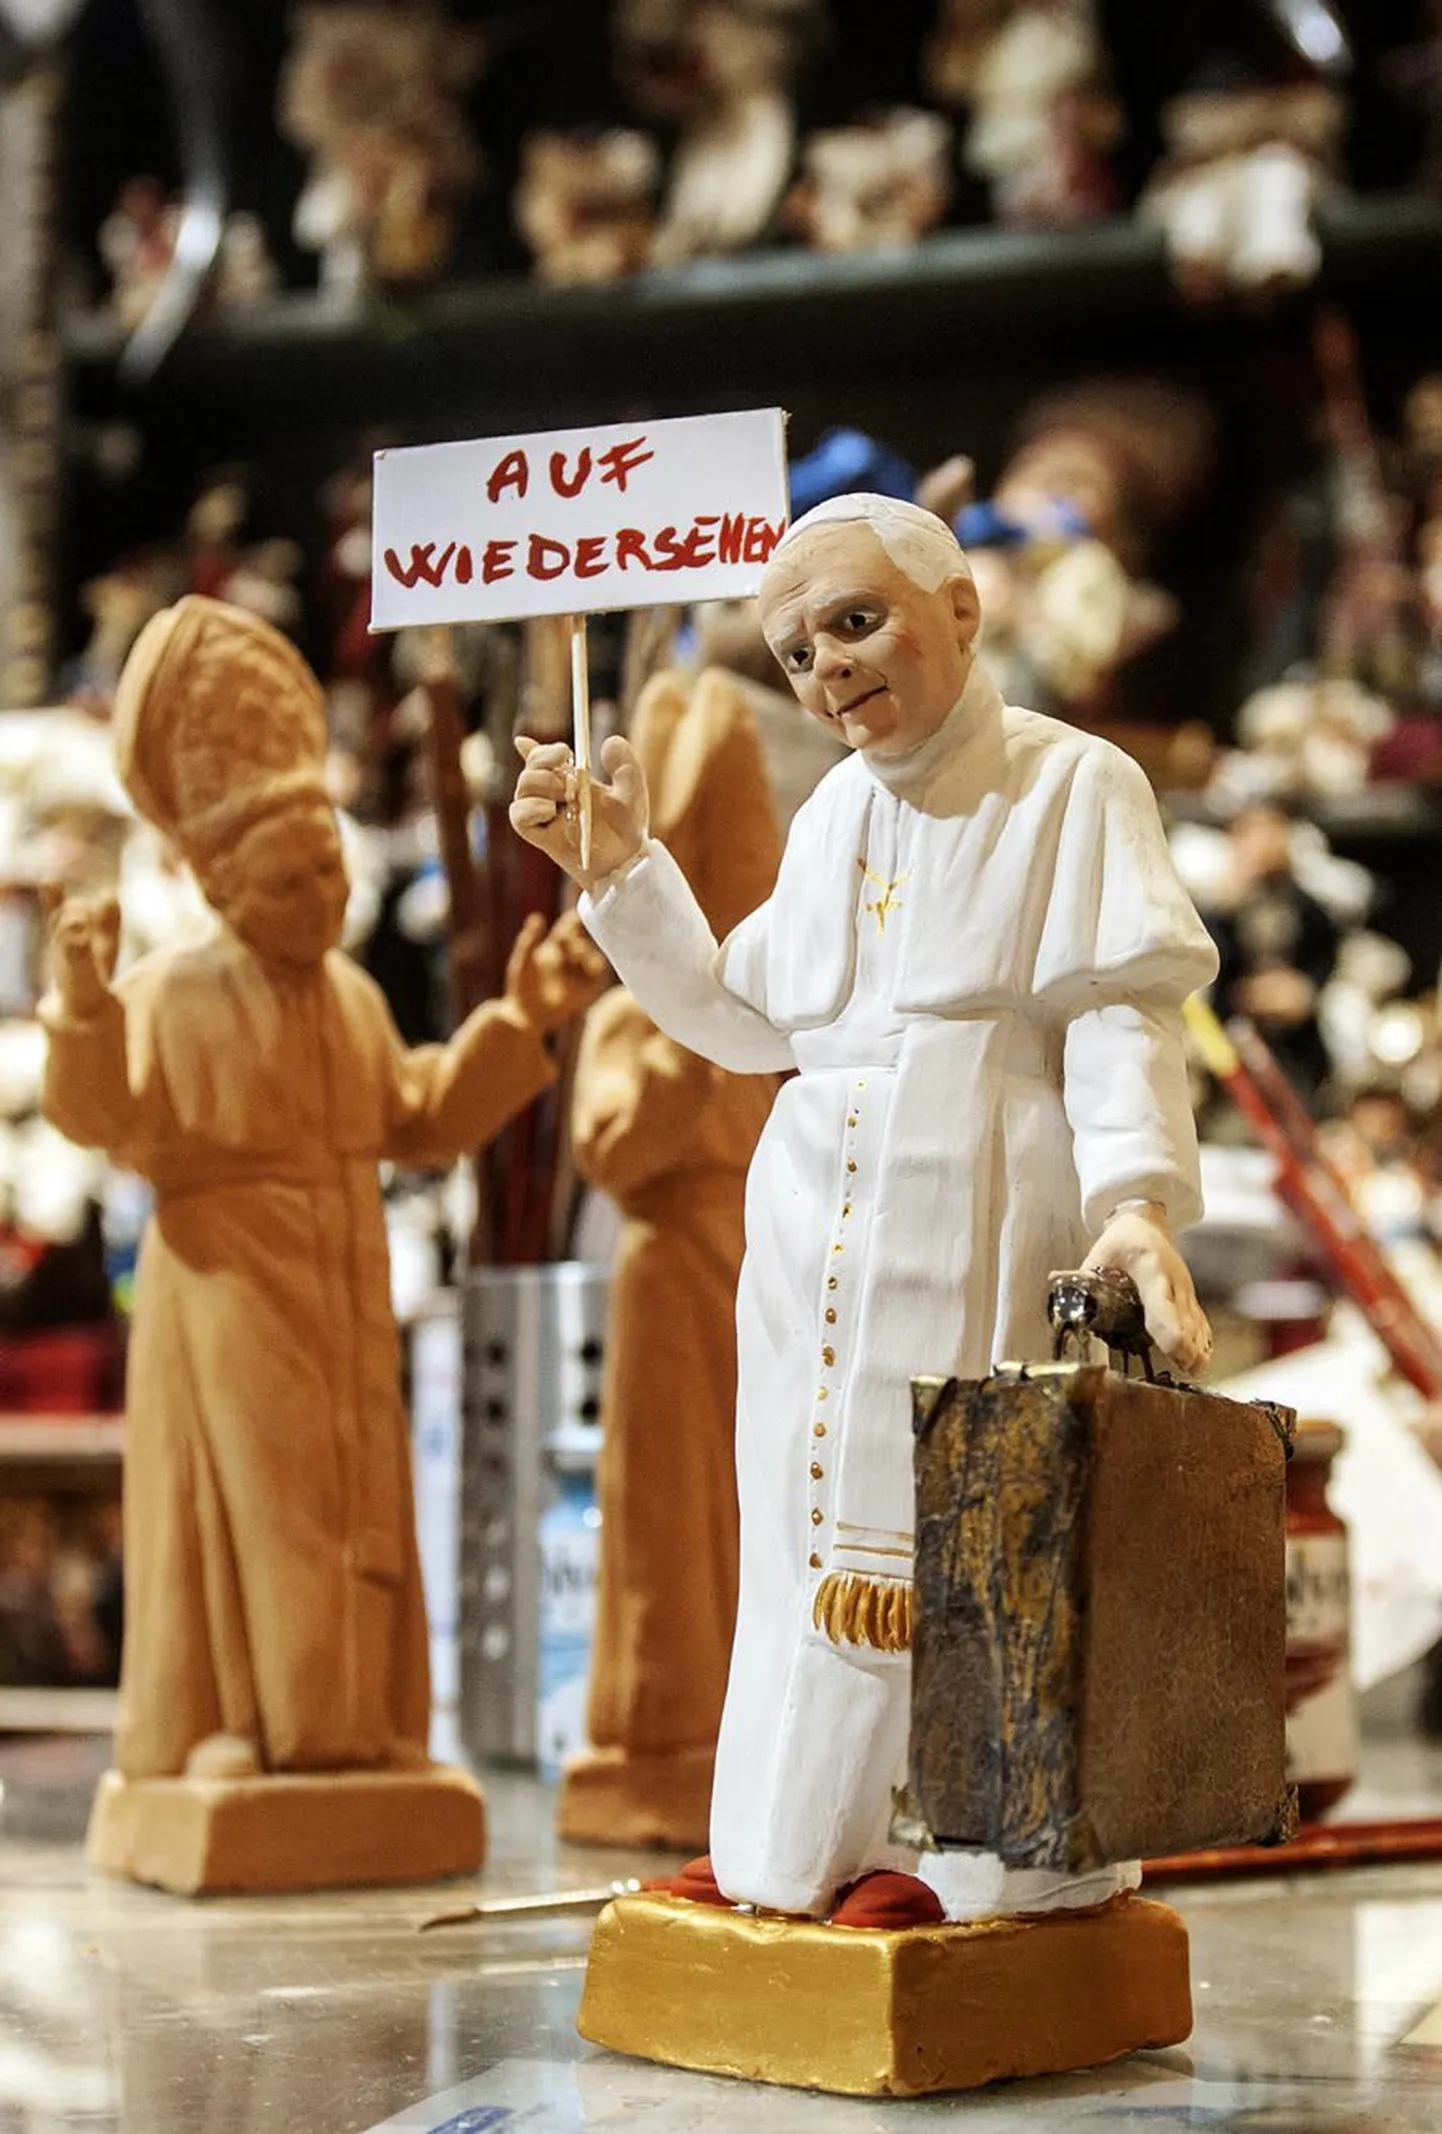 Kuigi paljud katoliiklased tunnistasid veel eilegi šokki paavsti ootamatu lahkumisteate pärast, on vähemalt osa poepidajaid olukorraga kiirelt kohanenud. «Nägemist,» ütles see juba eile Napolis müügil olnud kohvriga Benedictus XVI kuju.